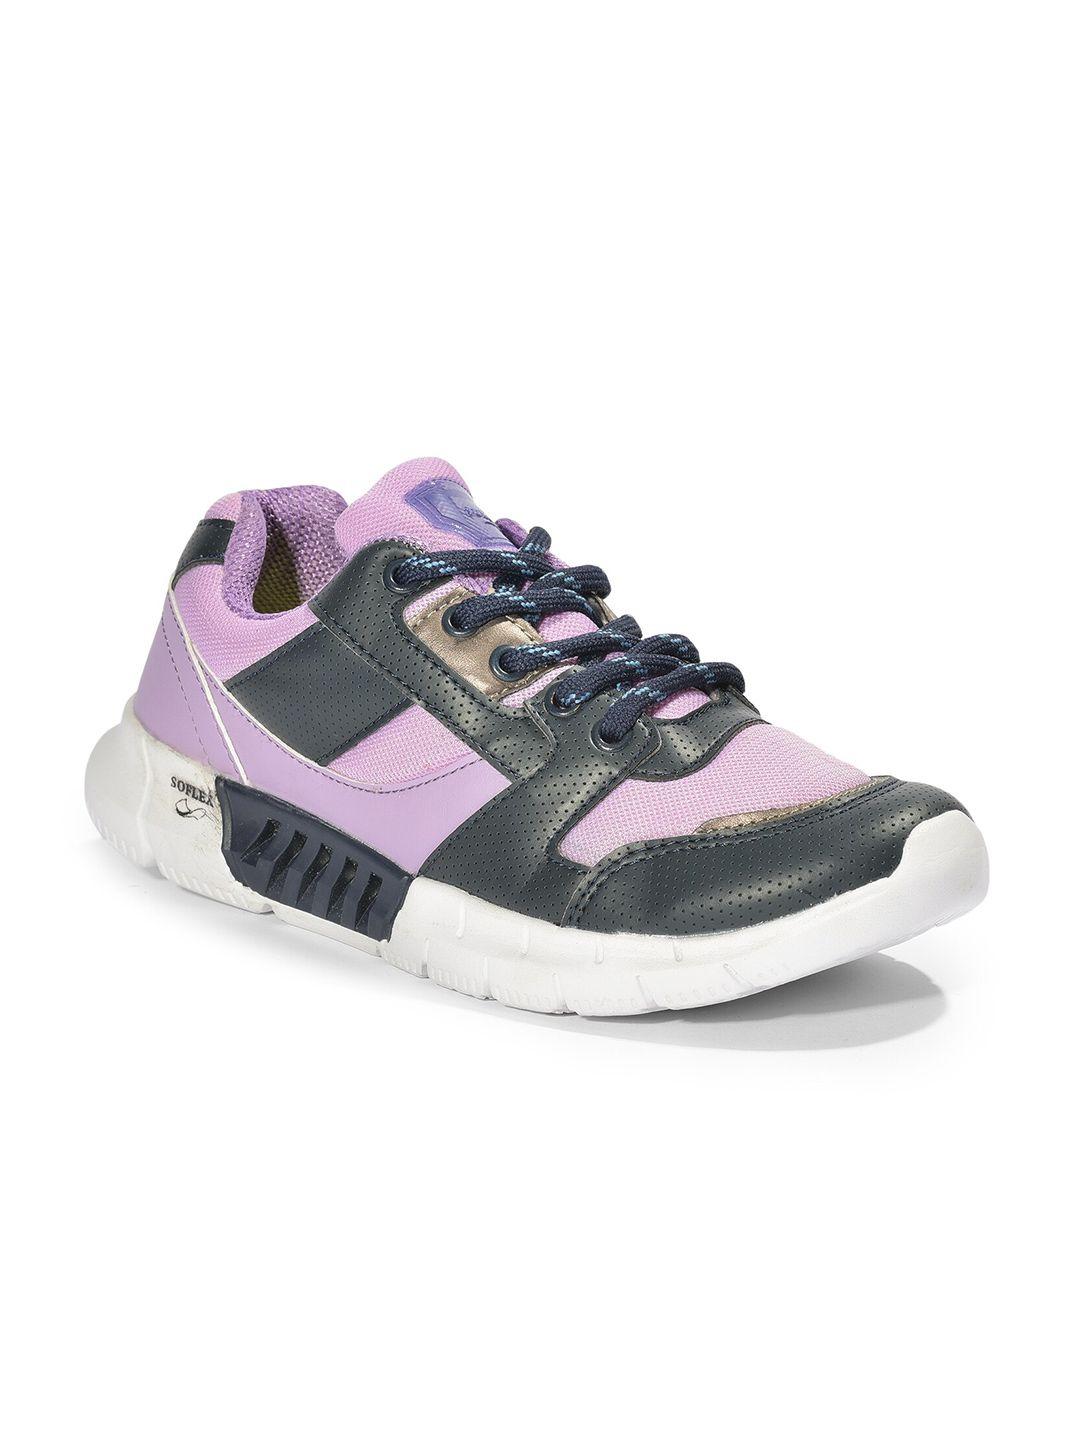 liberty-women-purple-mesh-running-non-marking-shoes